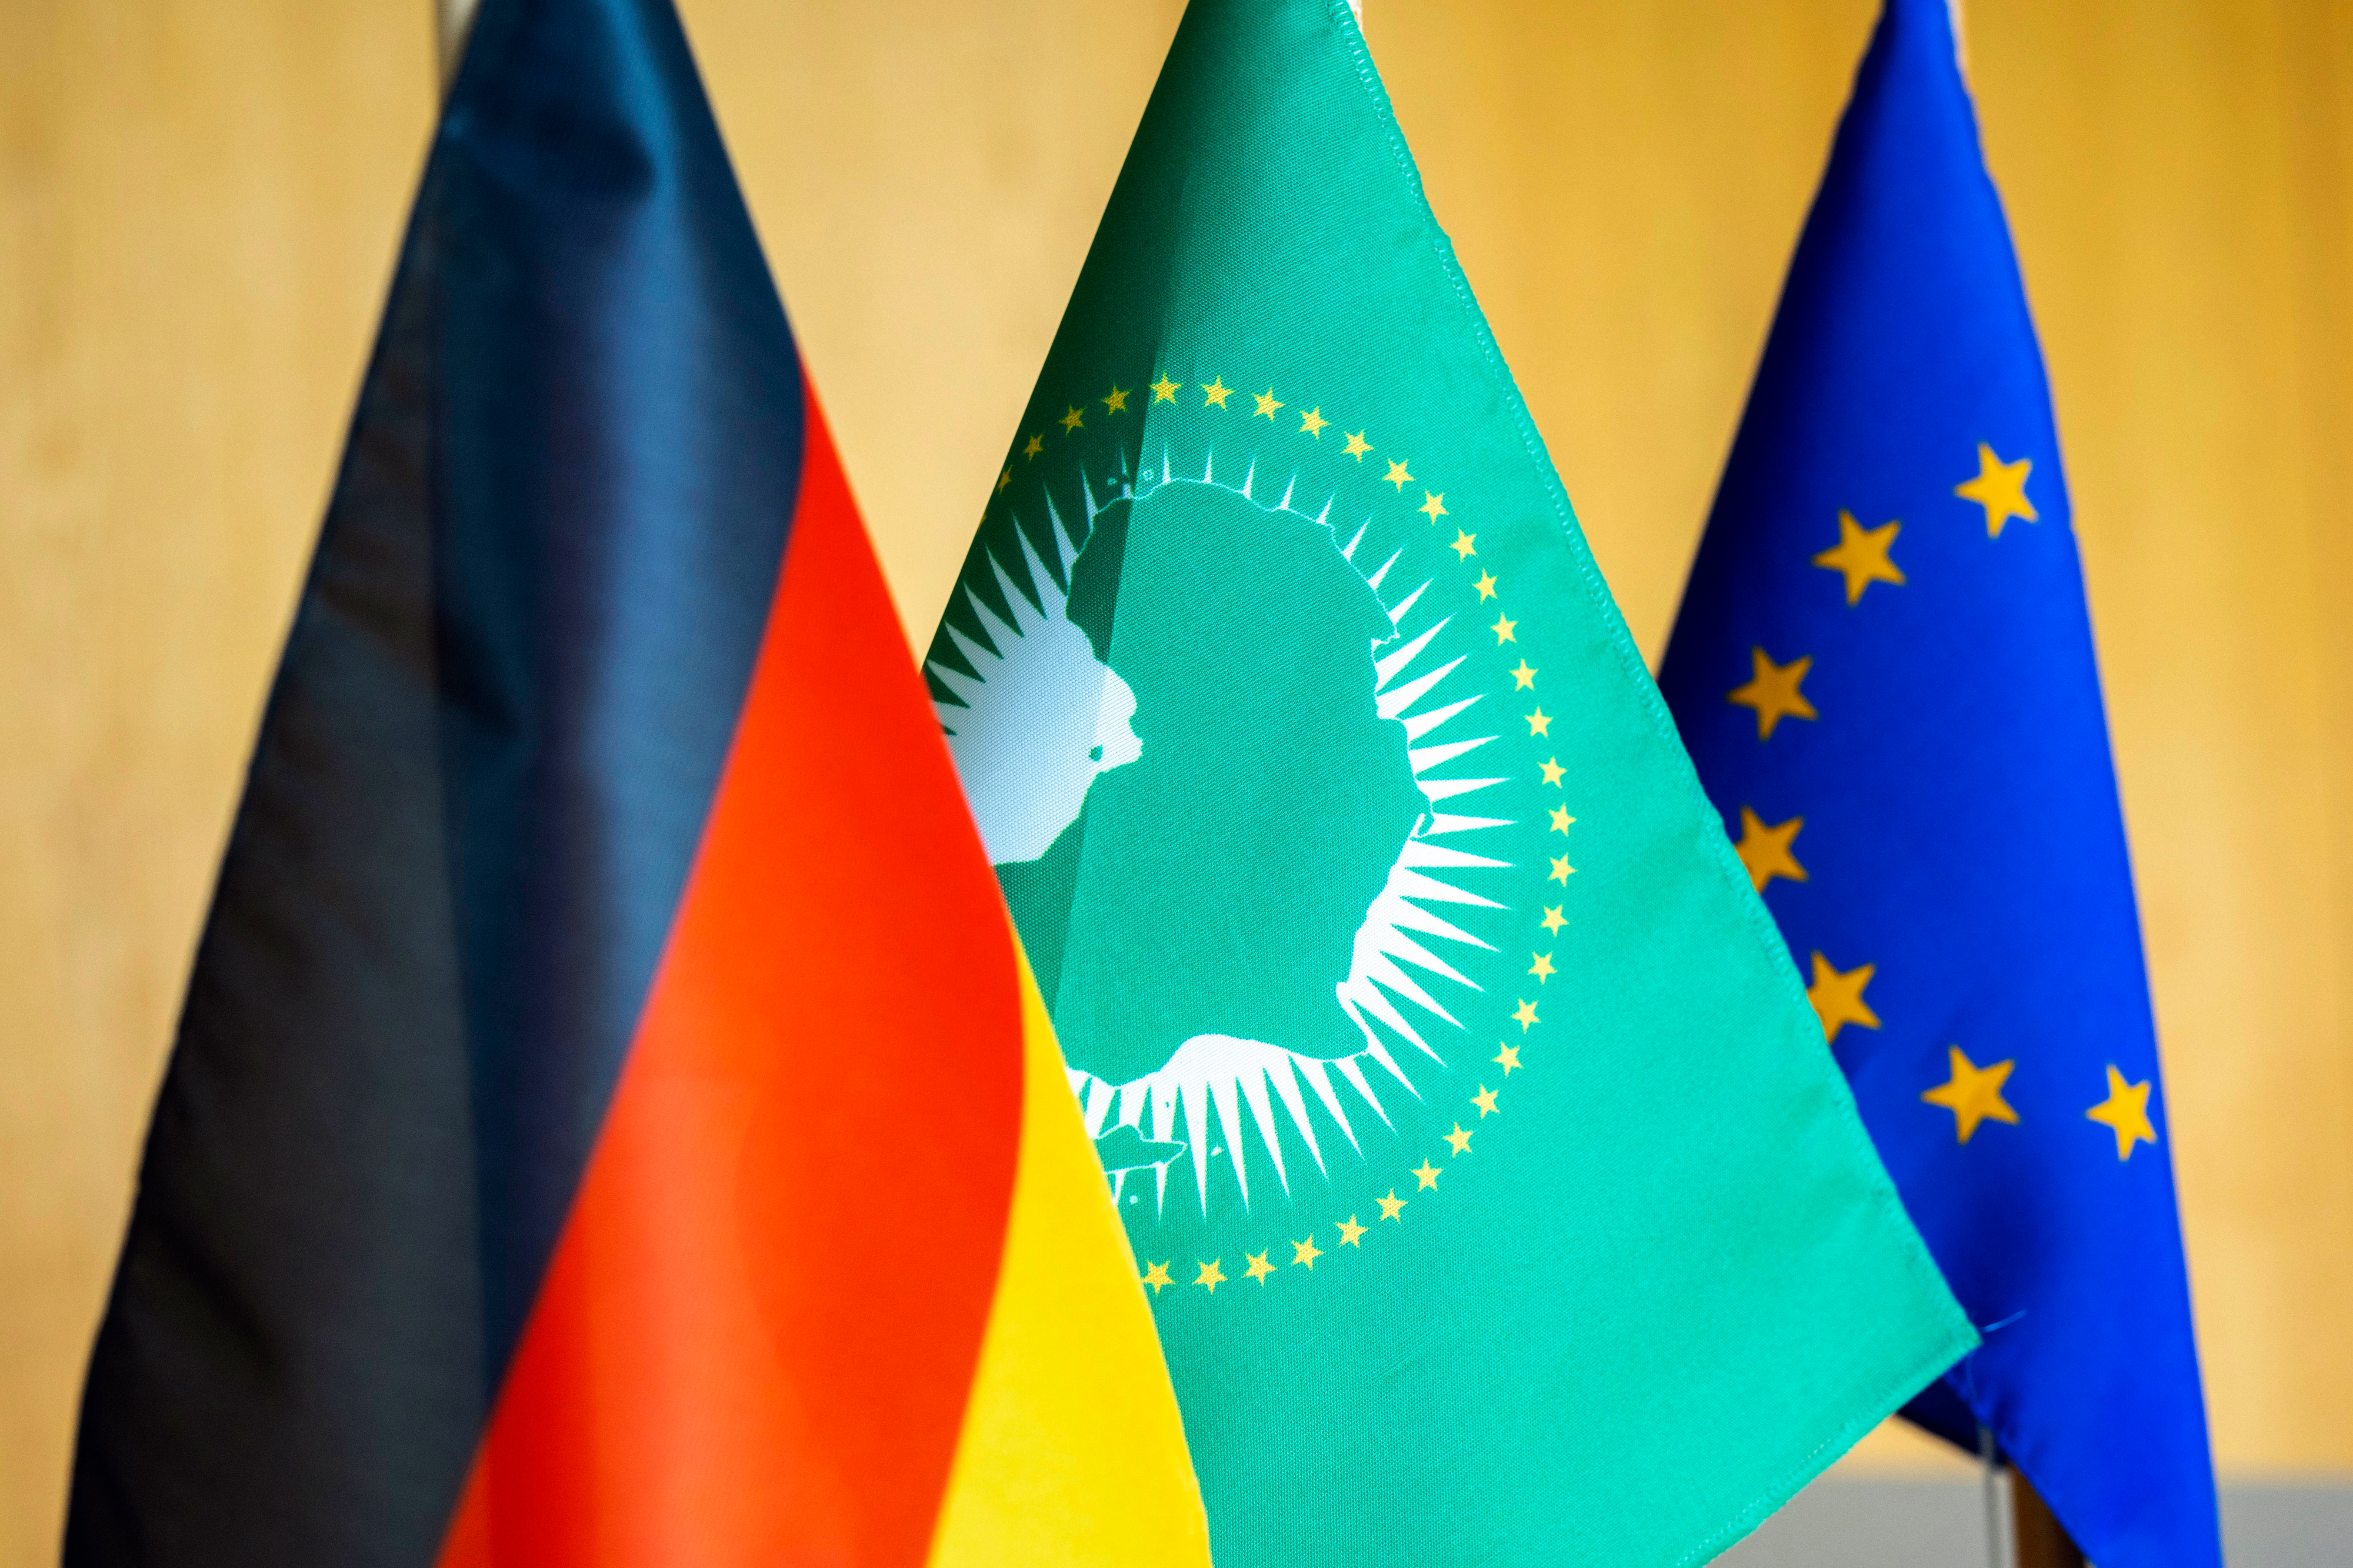 Von links: Flagge von Deutschland, der Afrikanischen Union und der Europäischen Union